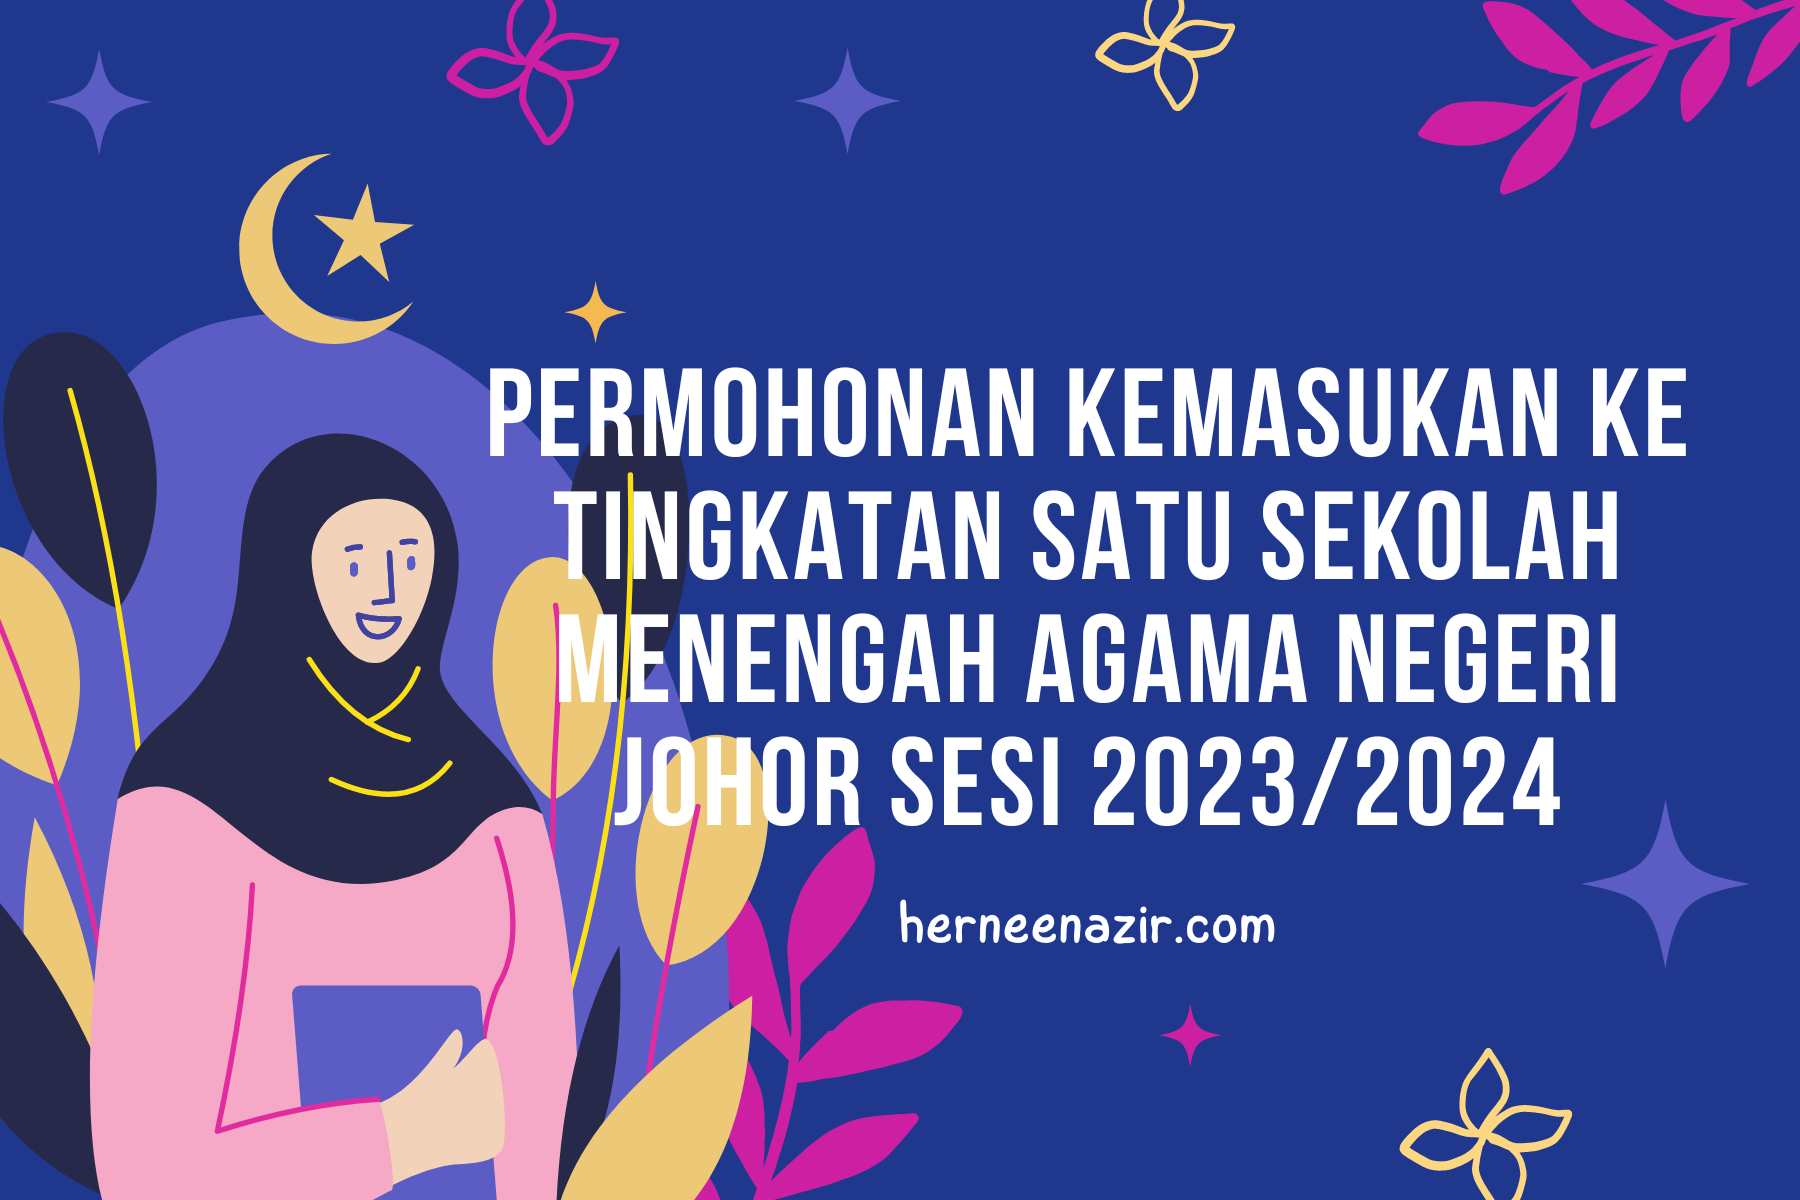 Permohonan Kemasukan Ke Tingkatan Satu Sekolah Menengah Agama Negeri Johor Sesi 2023/2024